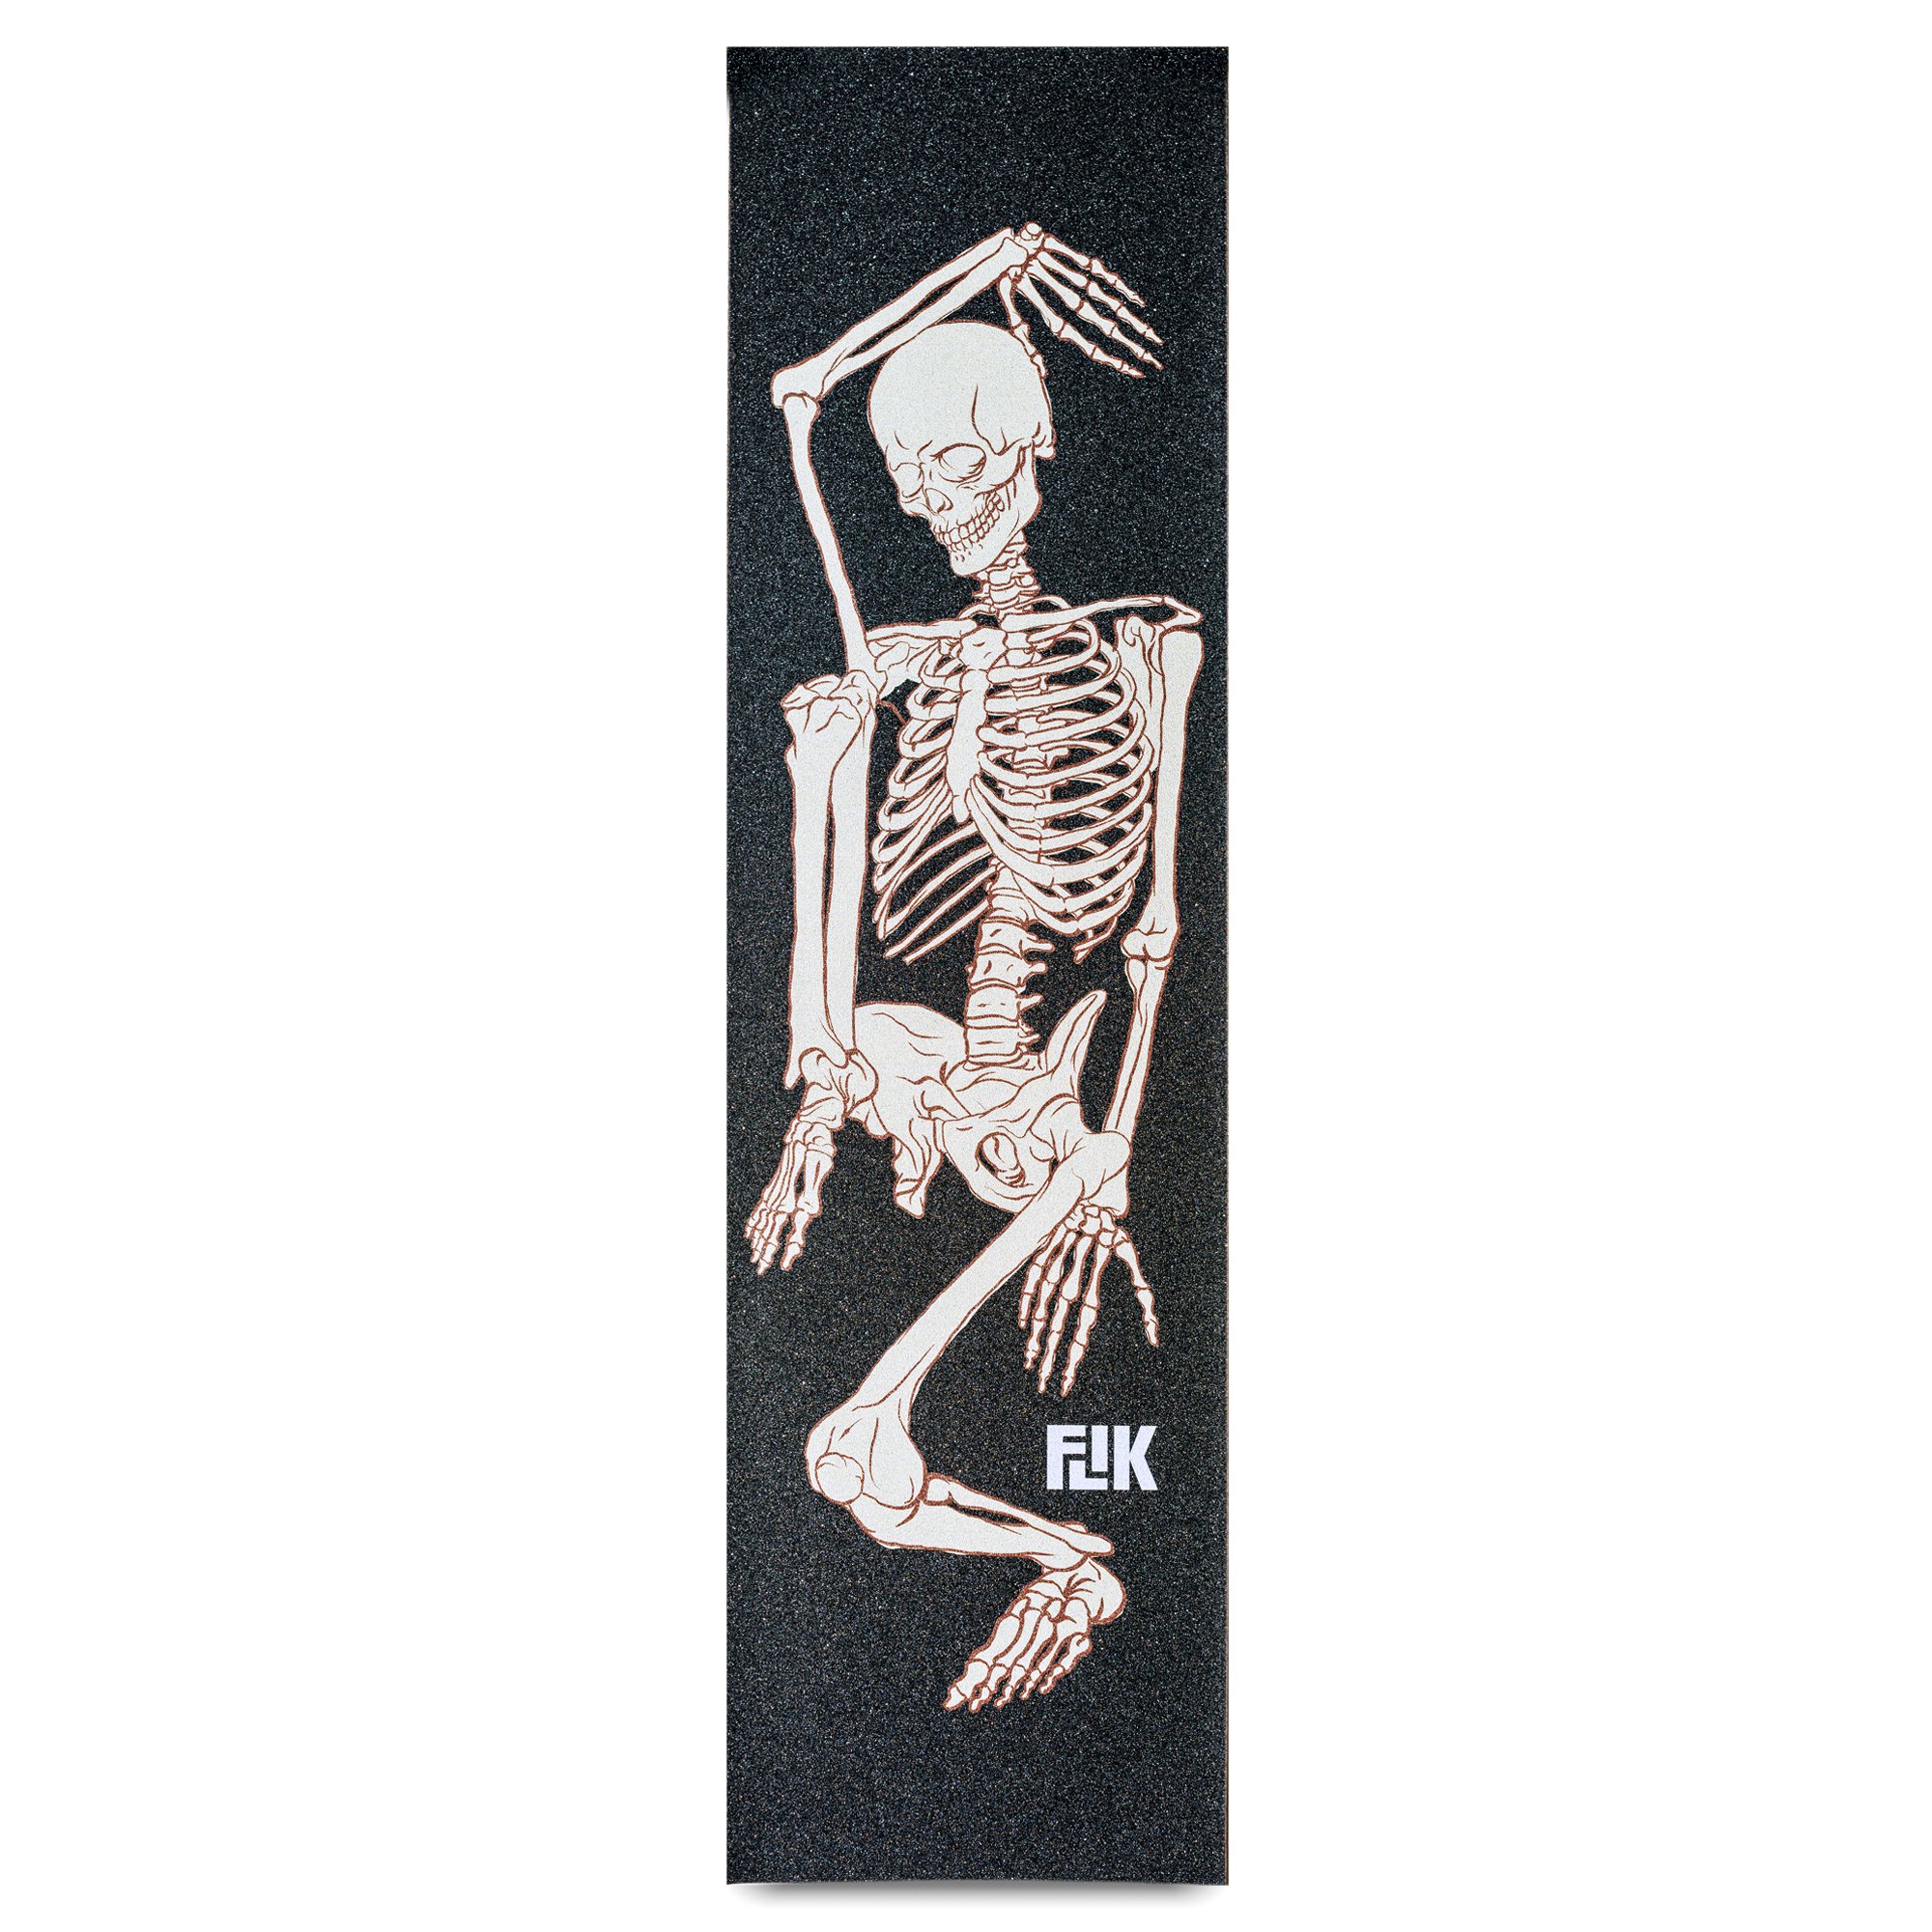 Birsppy Skeleton Skull Rock and Roll Hand Towels Soft Fingertip